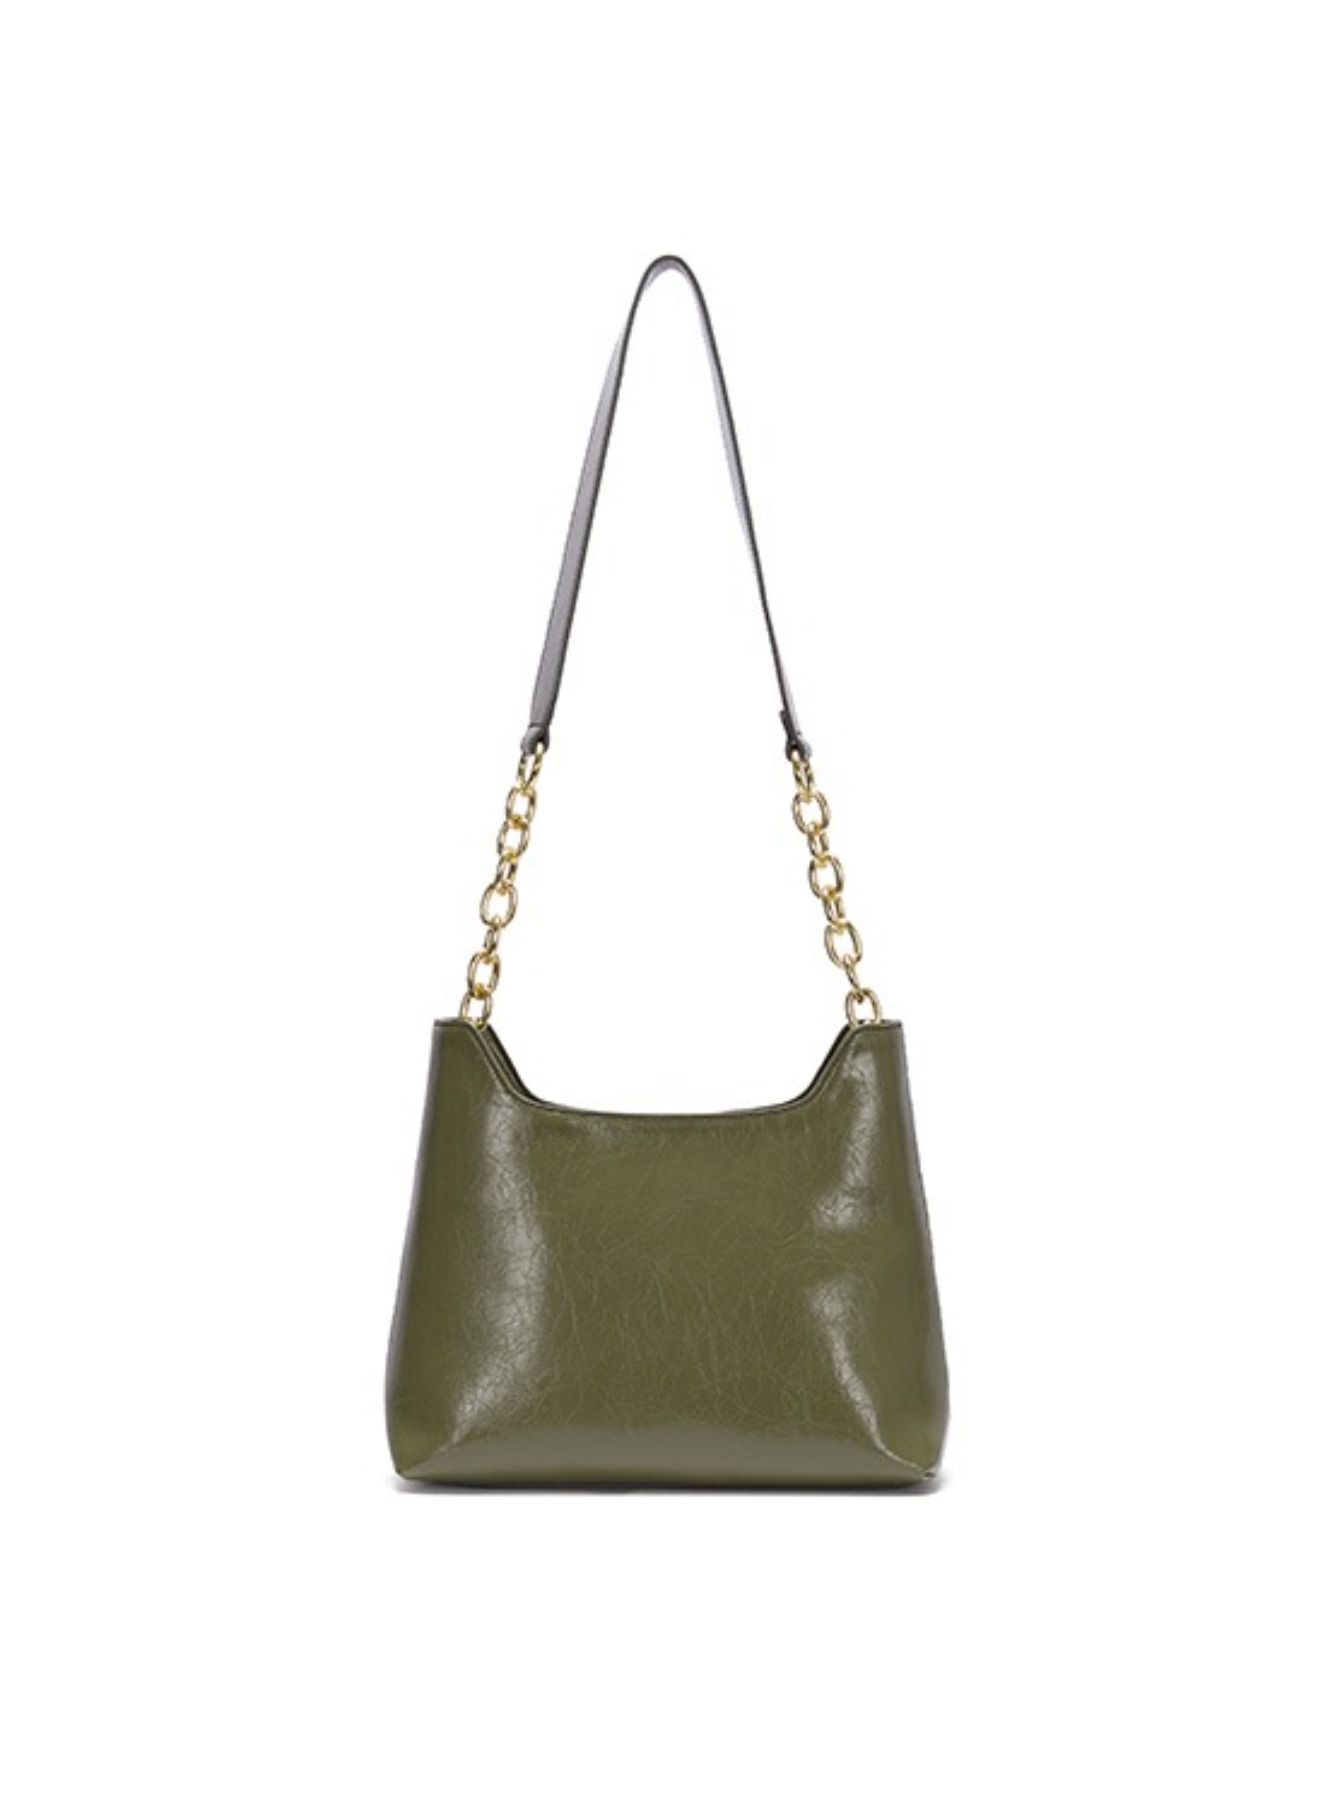 Wrinkle Leather Medium Bag in Olive_VX0AG0910